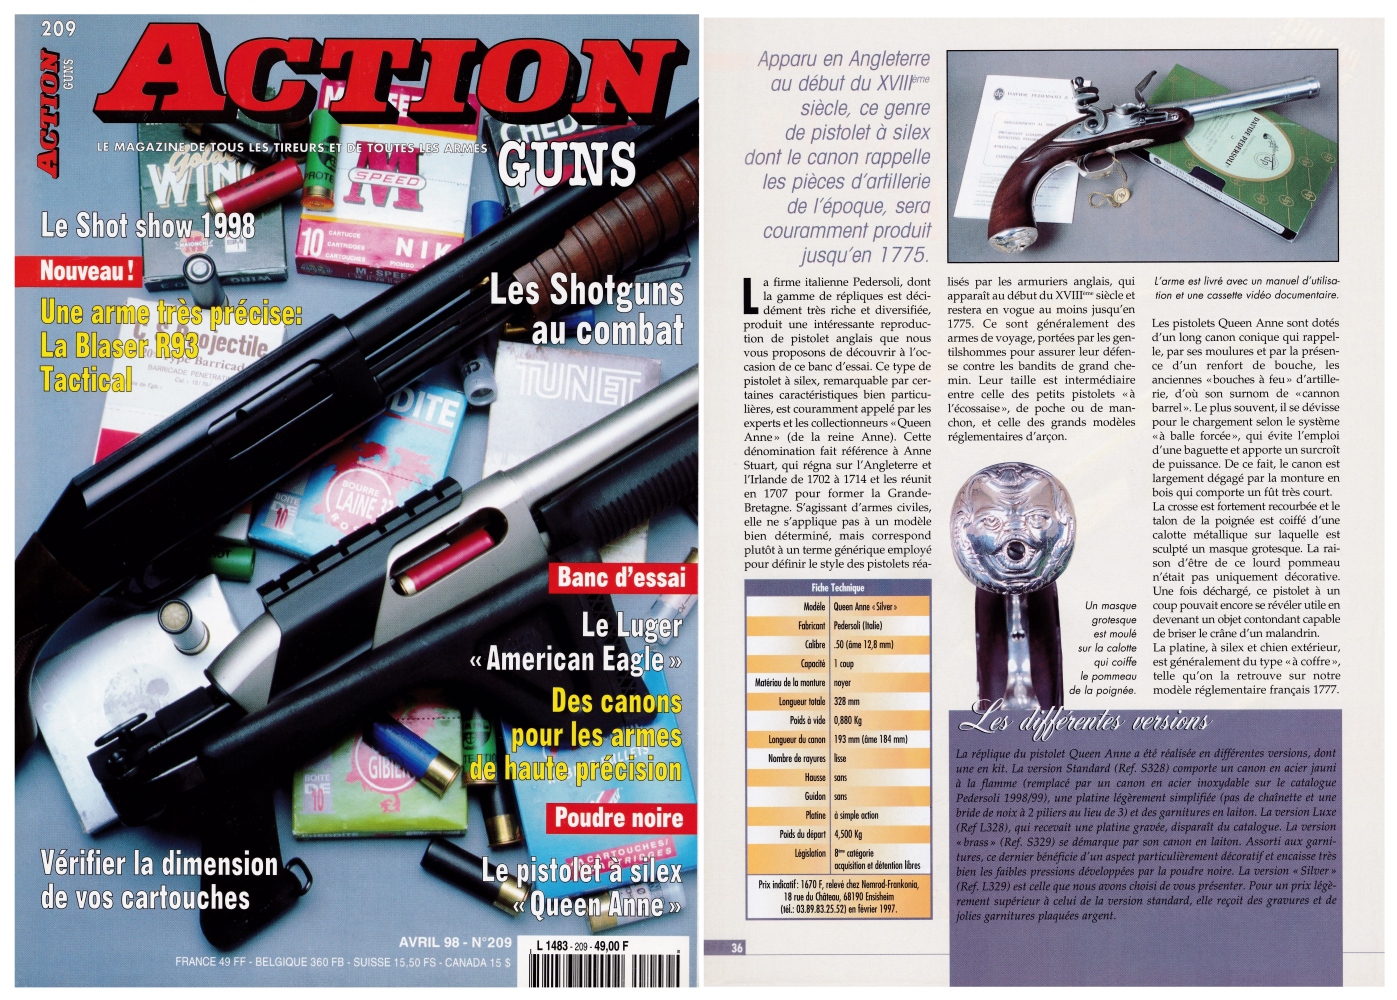 Le banc d’essai du pistolet Pedersoli "Queen Anne" a été publié sur 5 pages dans le magazine Action Guns n°209 (avril 1998).